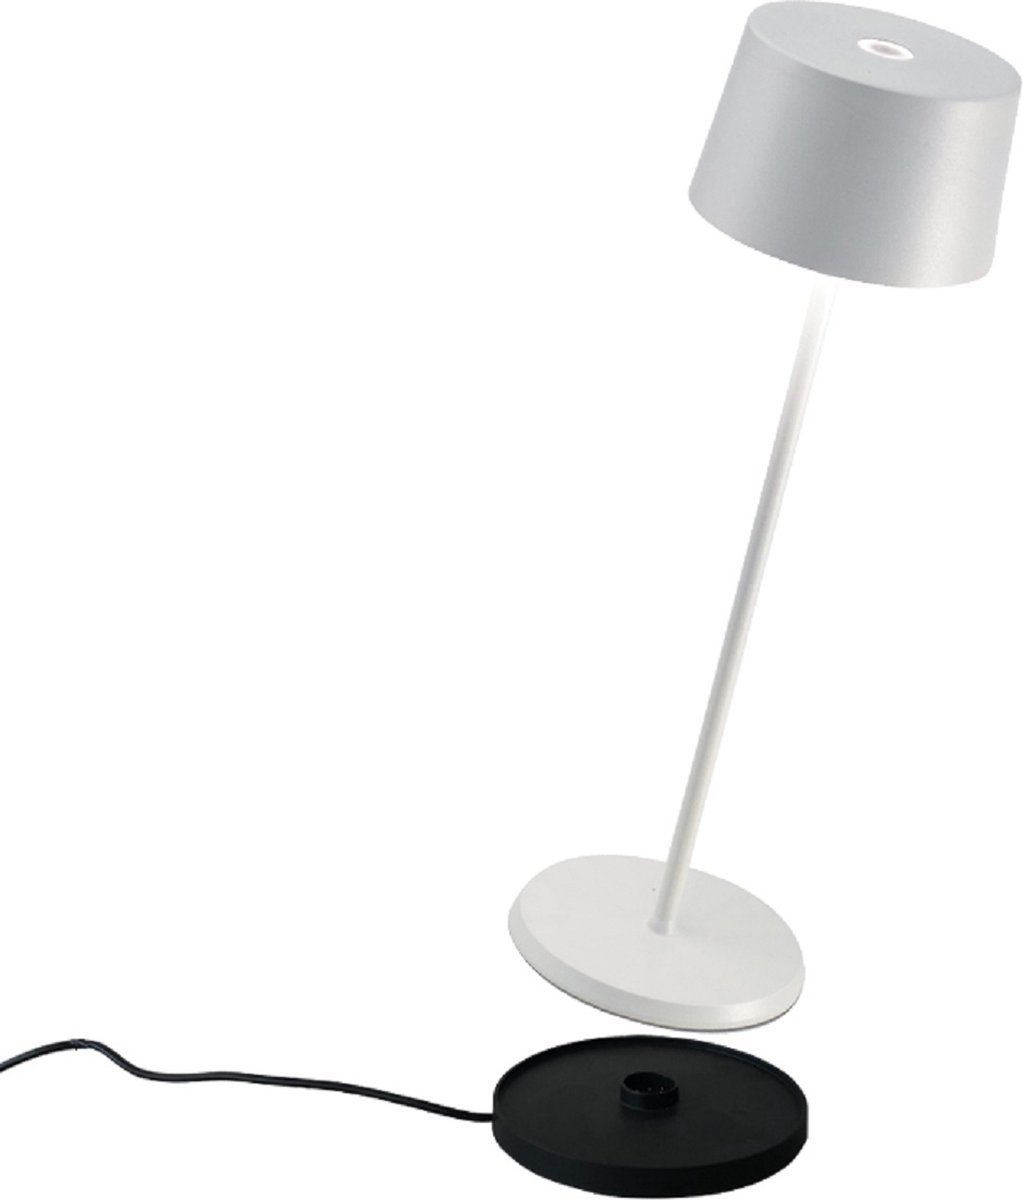 Zafferano - Olivia - Wit - H35.5cm - Ledlamp - Bureaulamp – Tafellamp – Snoerloos – Verplaatsbaar – Duurzaam - Voor binnen en buiten – LED - Dimbaar - 3000K - IP65 Spat Waterdicht - USB oplaadbaar - Wit